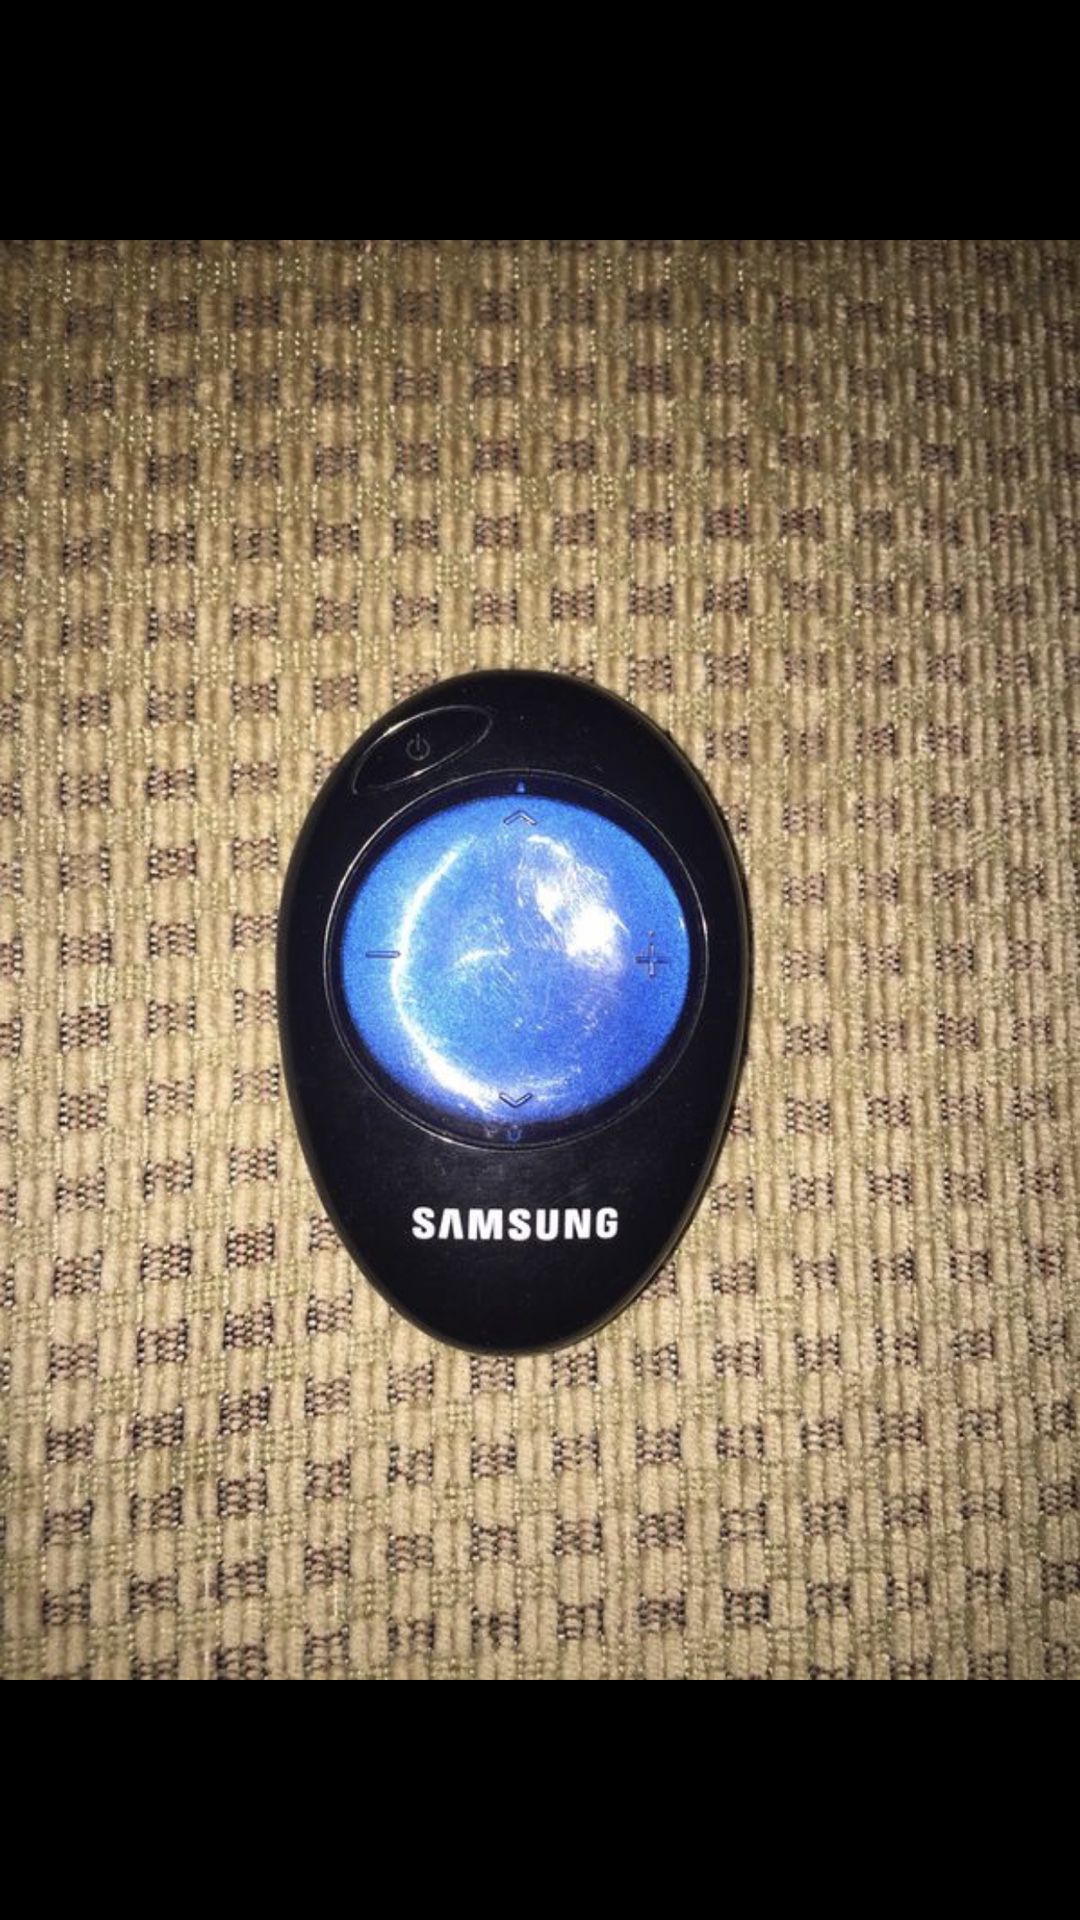 Samsung Pebble Mini Remote